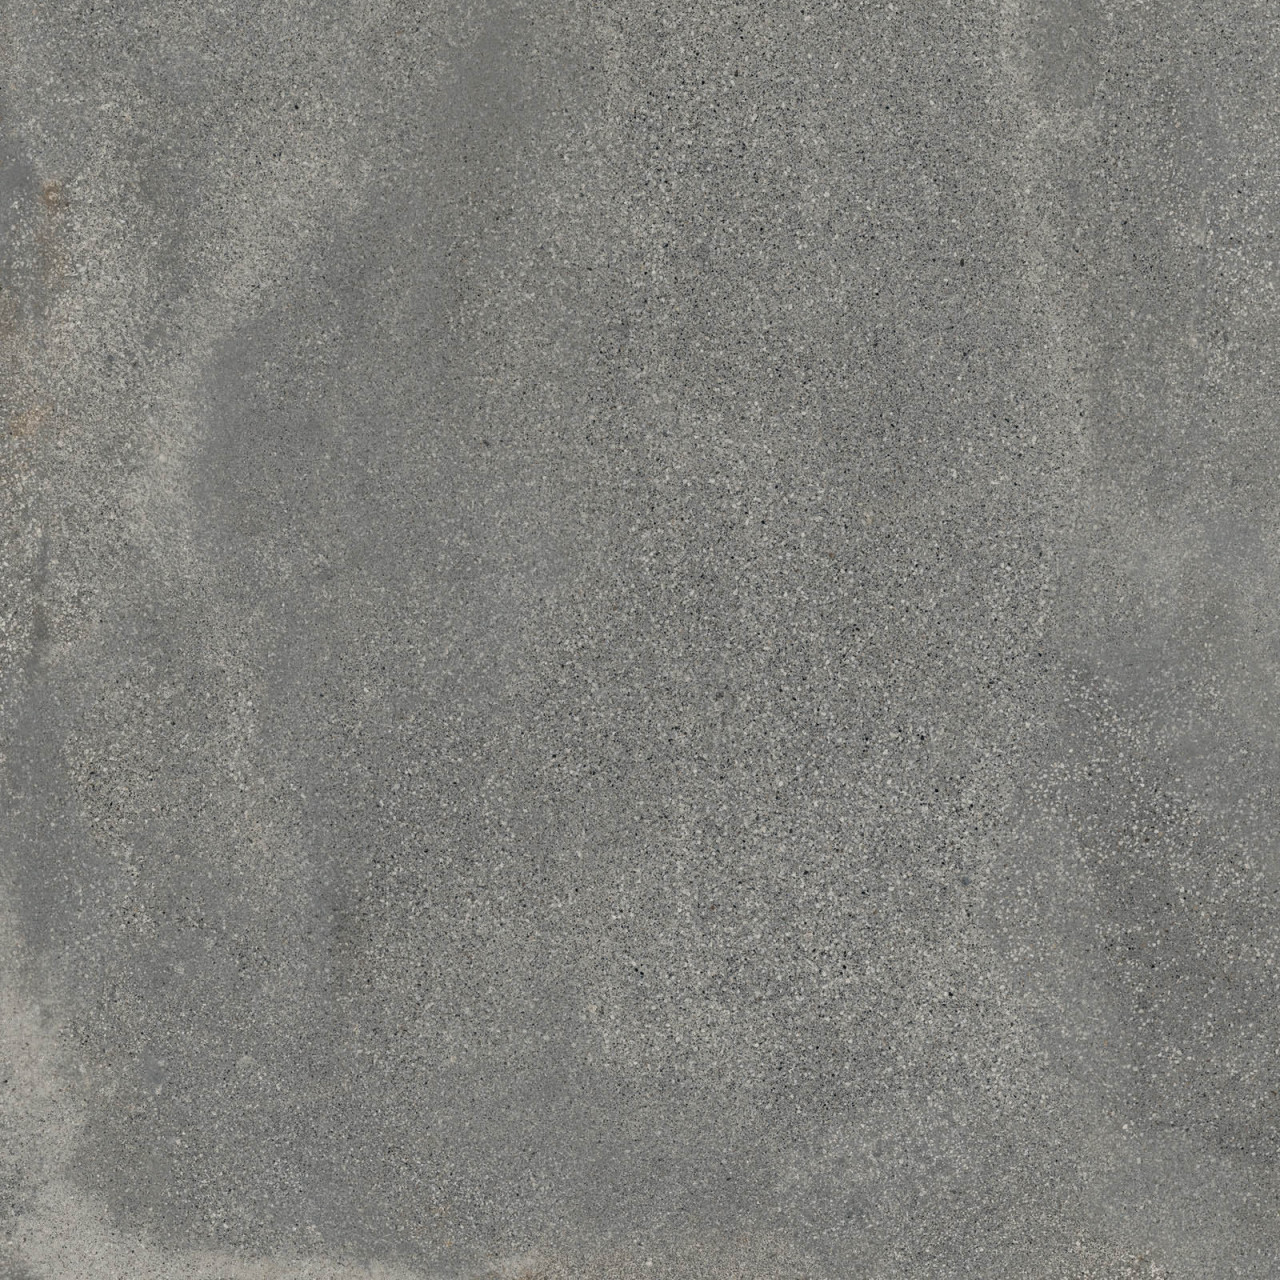 ABK Blend Concrete Grey Grip 60 x 60 cm Outdoor